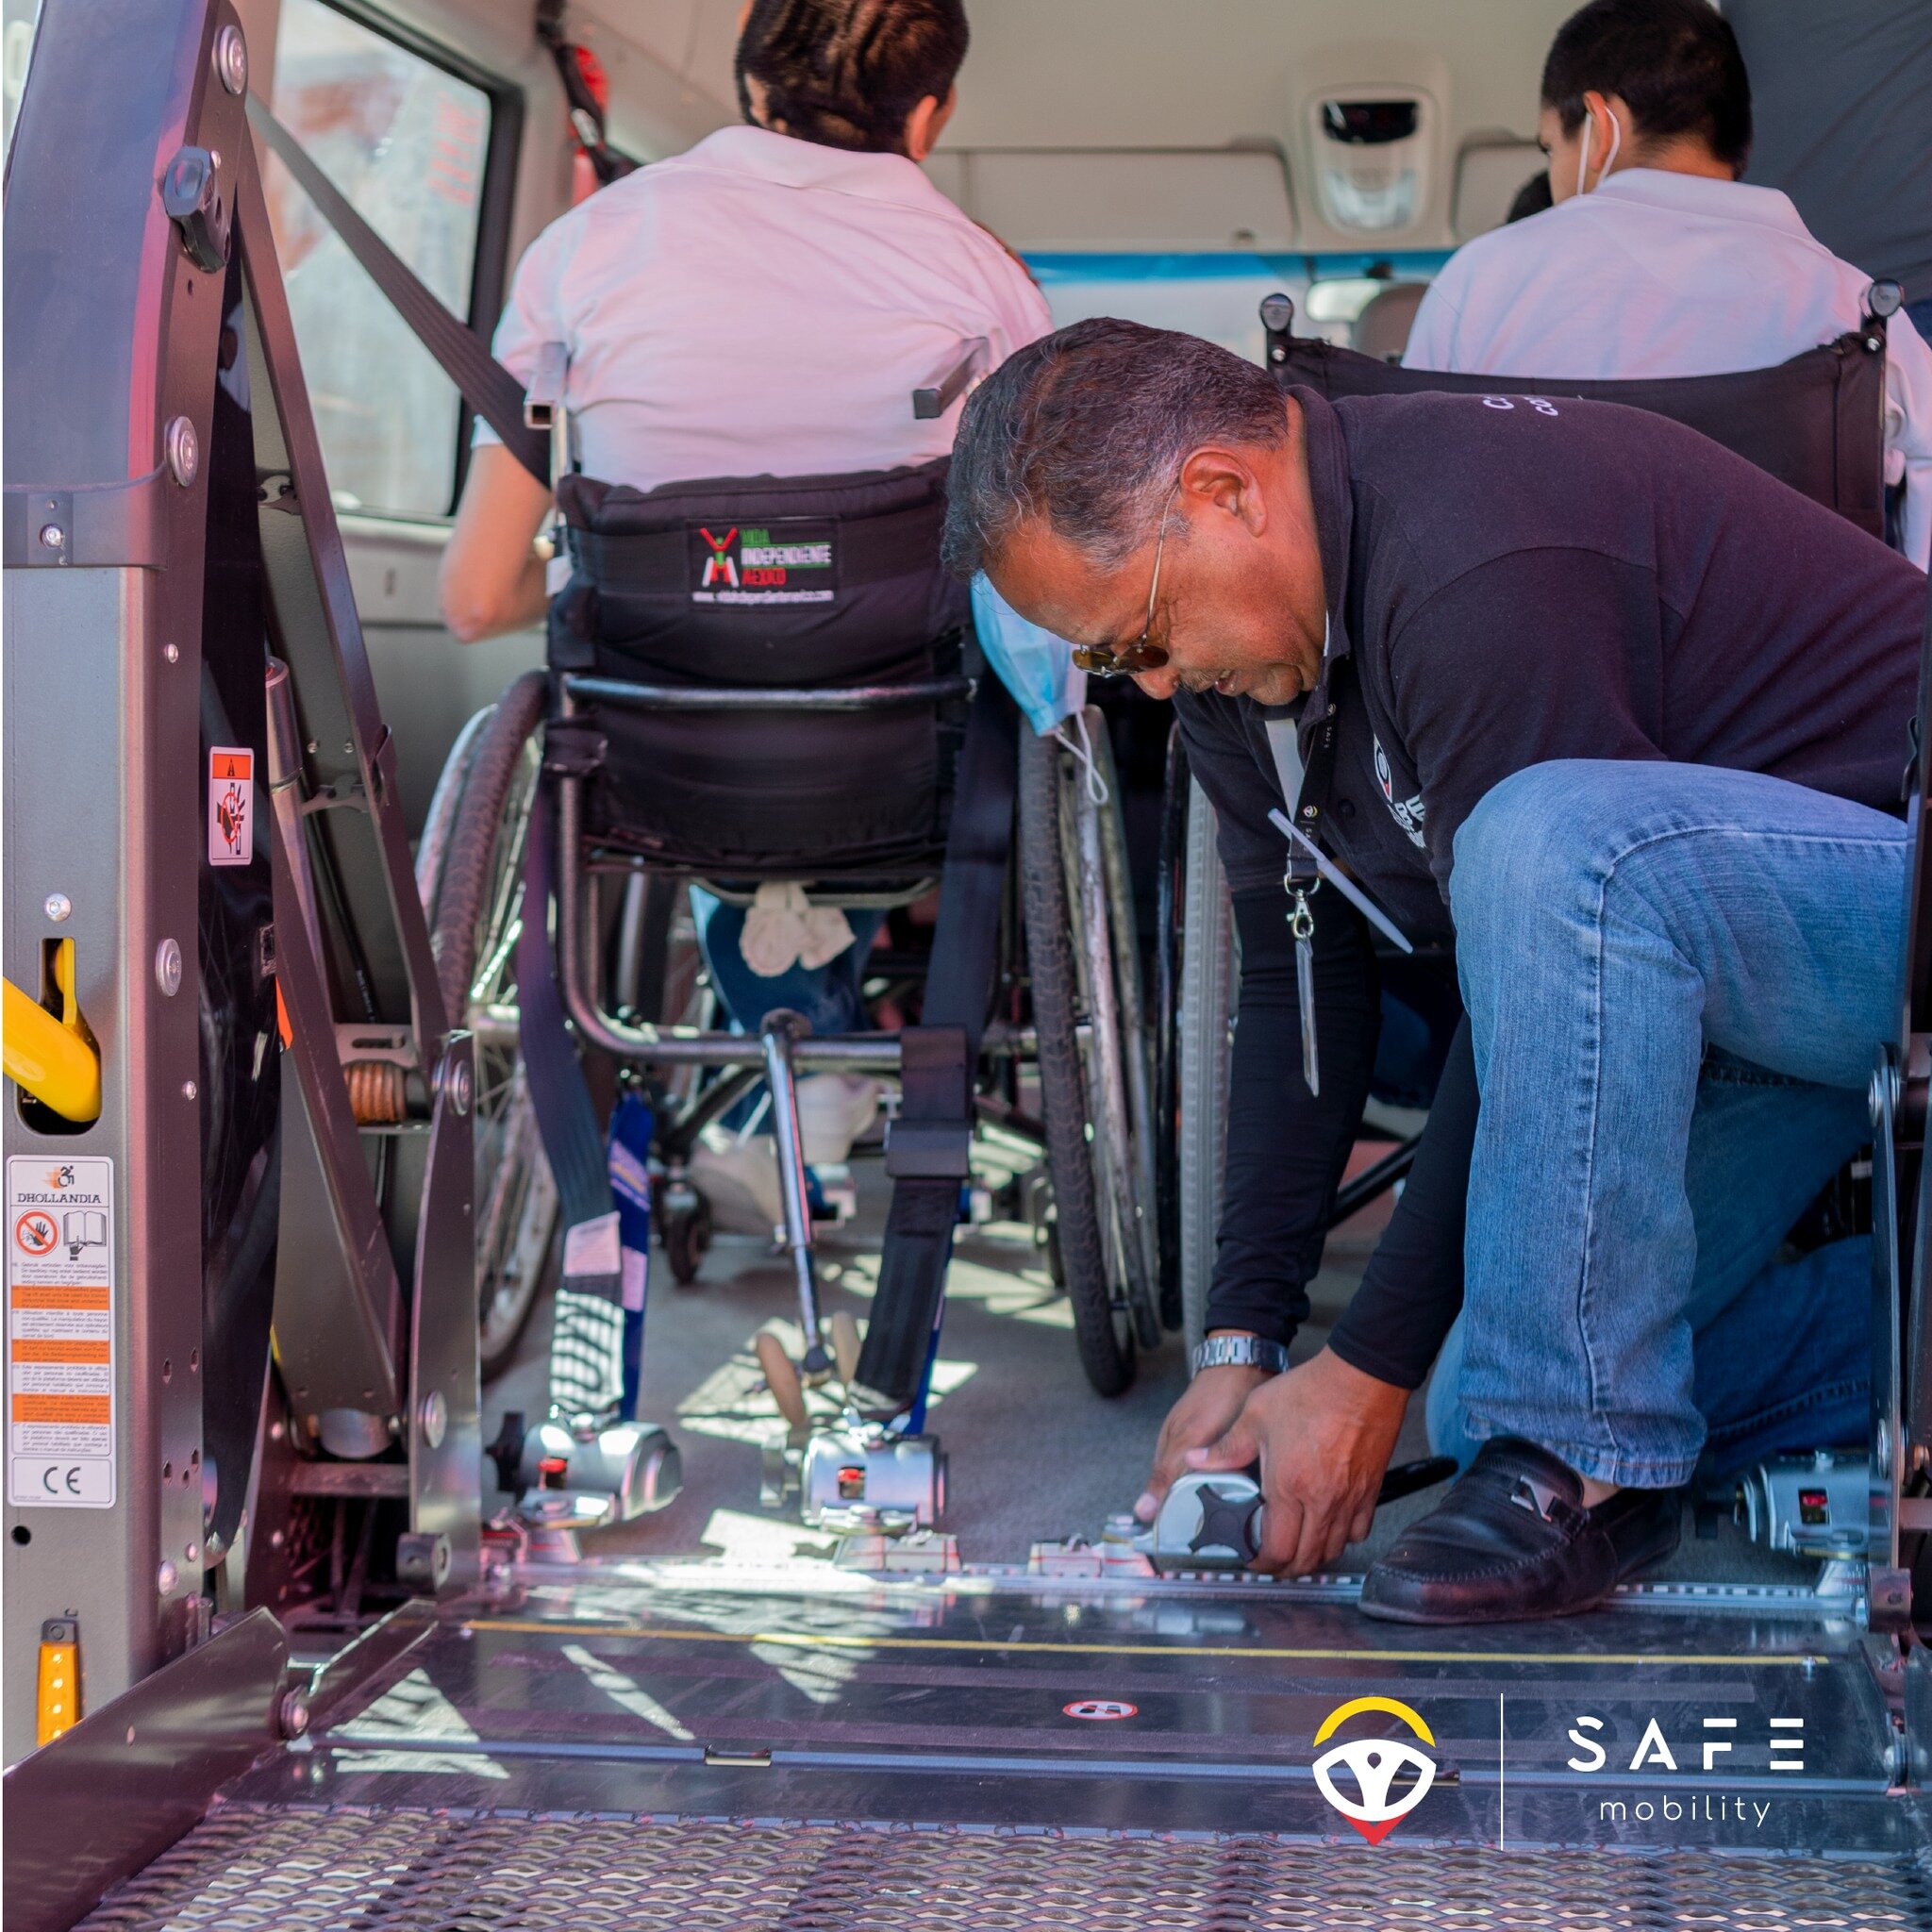 Nos comprometemos a ofrecer a nuestros usuarios el mejor servicio posible, por lo que formamos constantemente a nuestro personal para lograr este objetivo.

#viajeseguro #puebla #servicios #SafeMobility #safeapp #transporte #pidetusafe